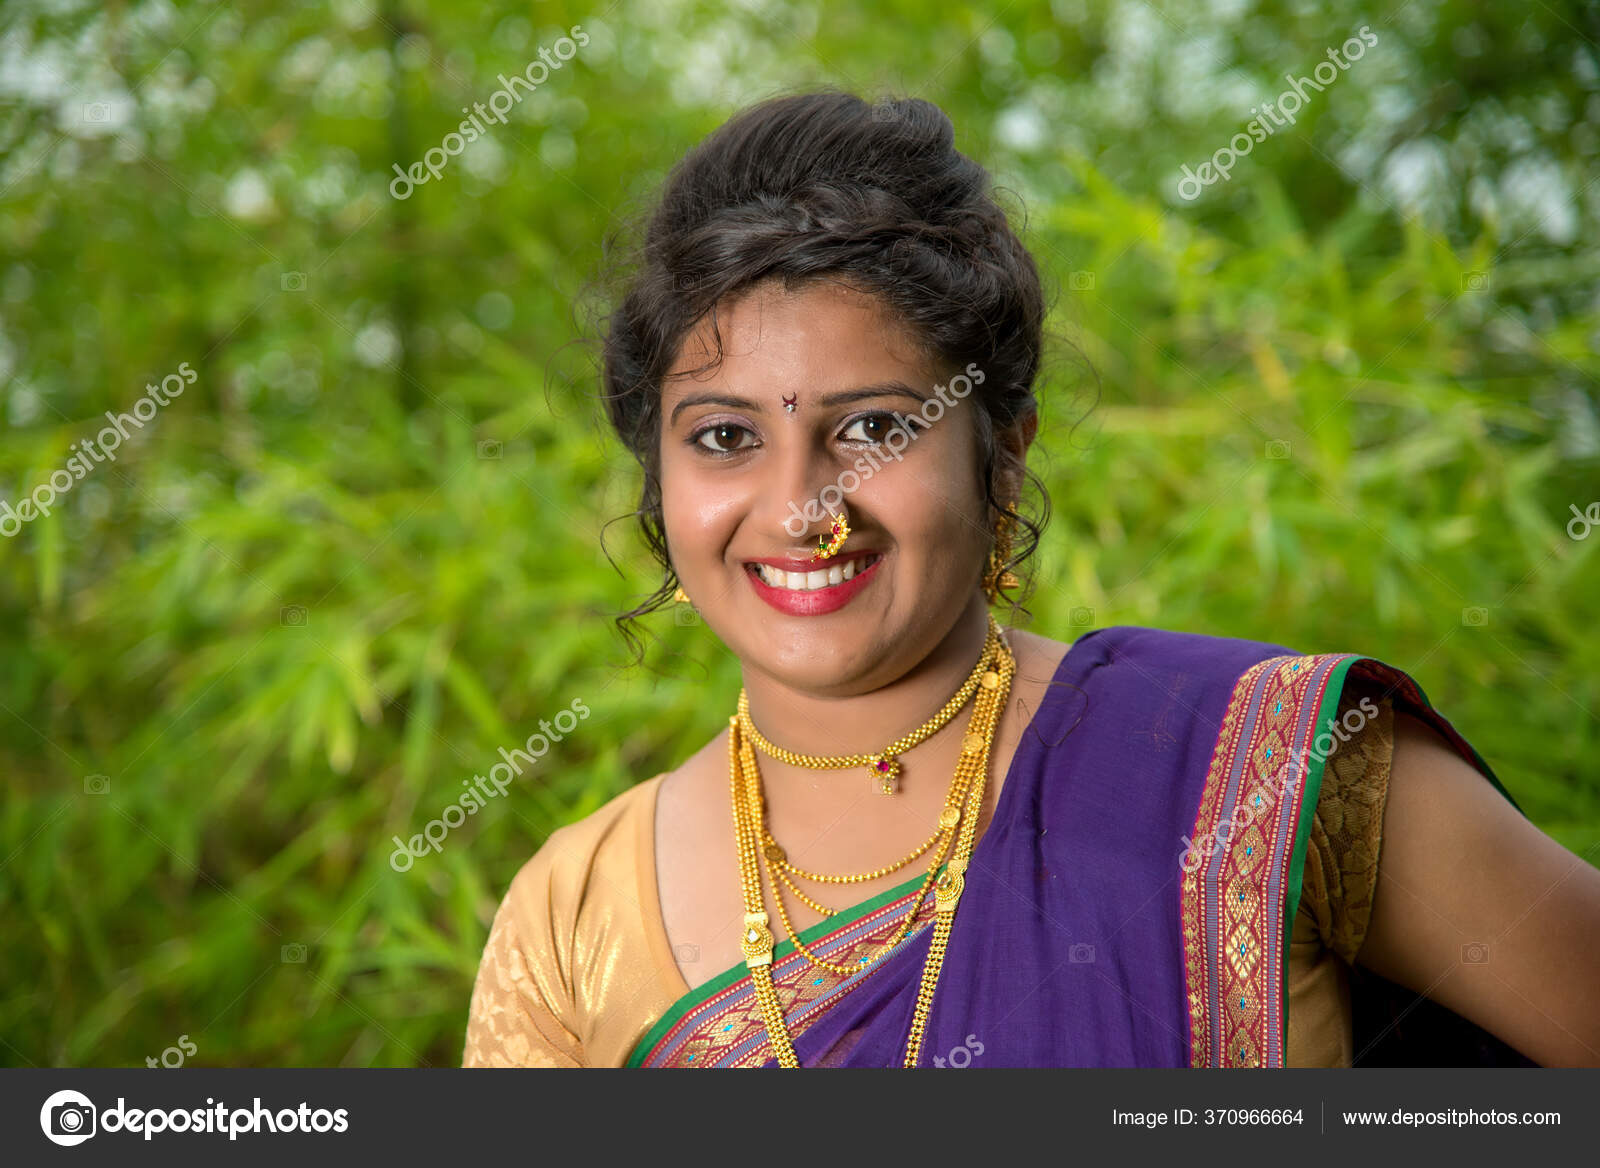 depositphotos 370966664 stock photo indian traditional beautiful young girl